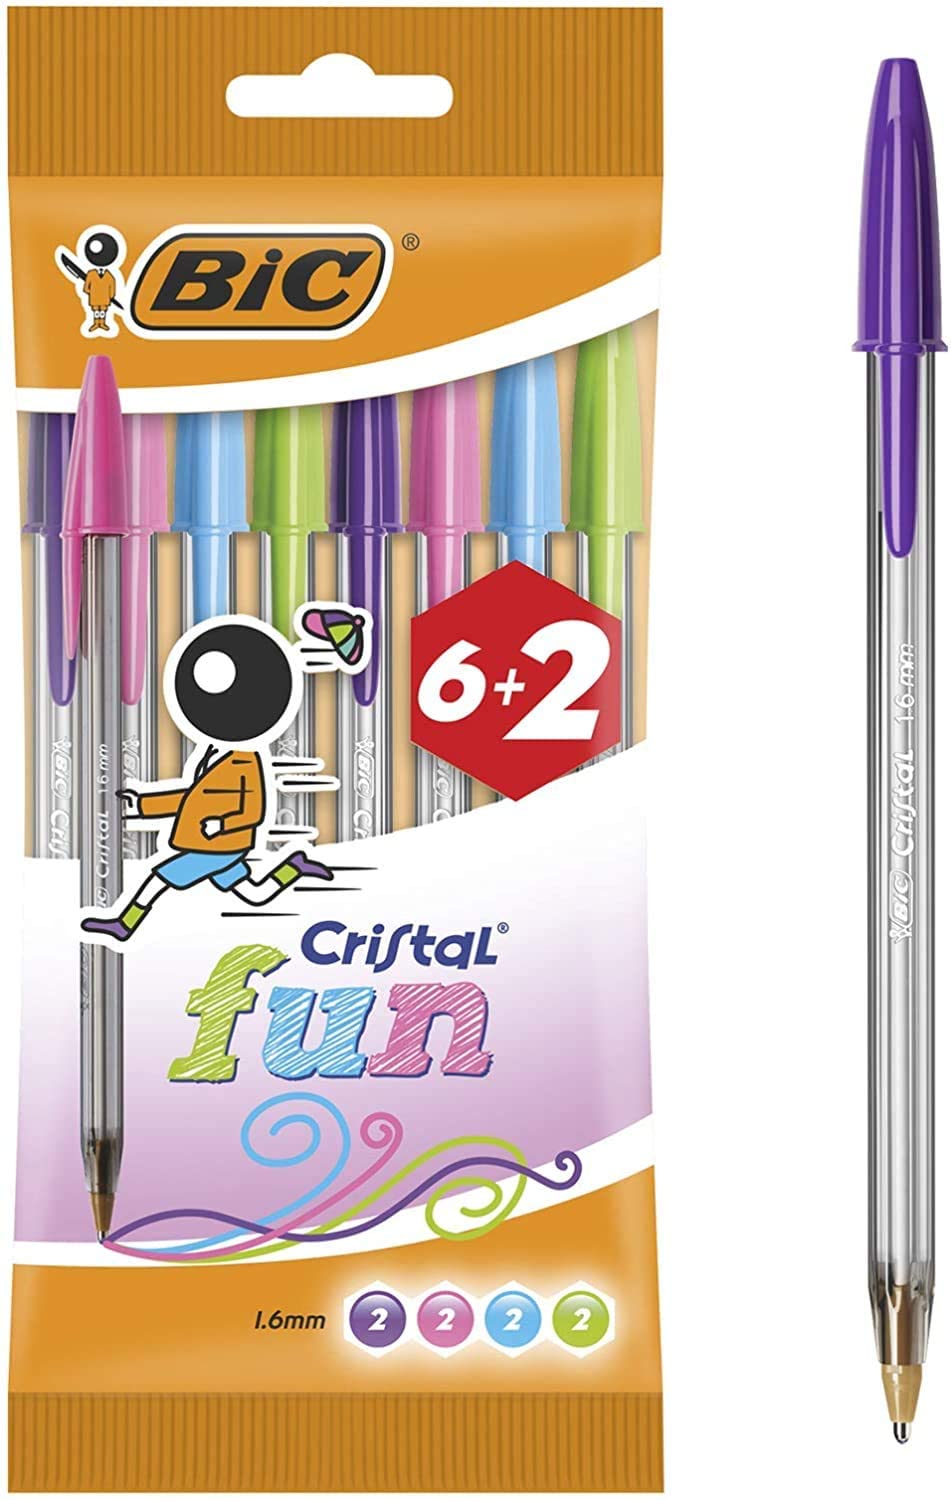 Bic Cristal Fun 6+2 Pack de 8 Boligrafos de Bola - Punta Redonda de 1.6mm - Trazo 0.42mm - Tinta con Base de Aceite - Colores Surtidos